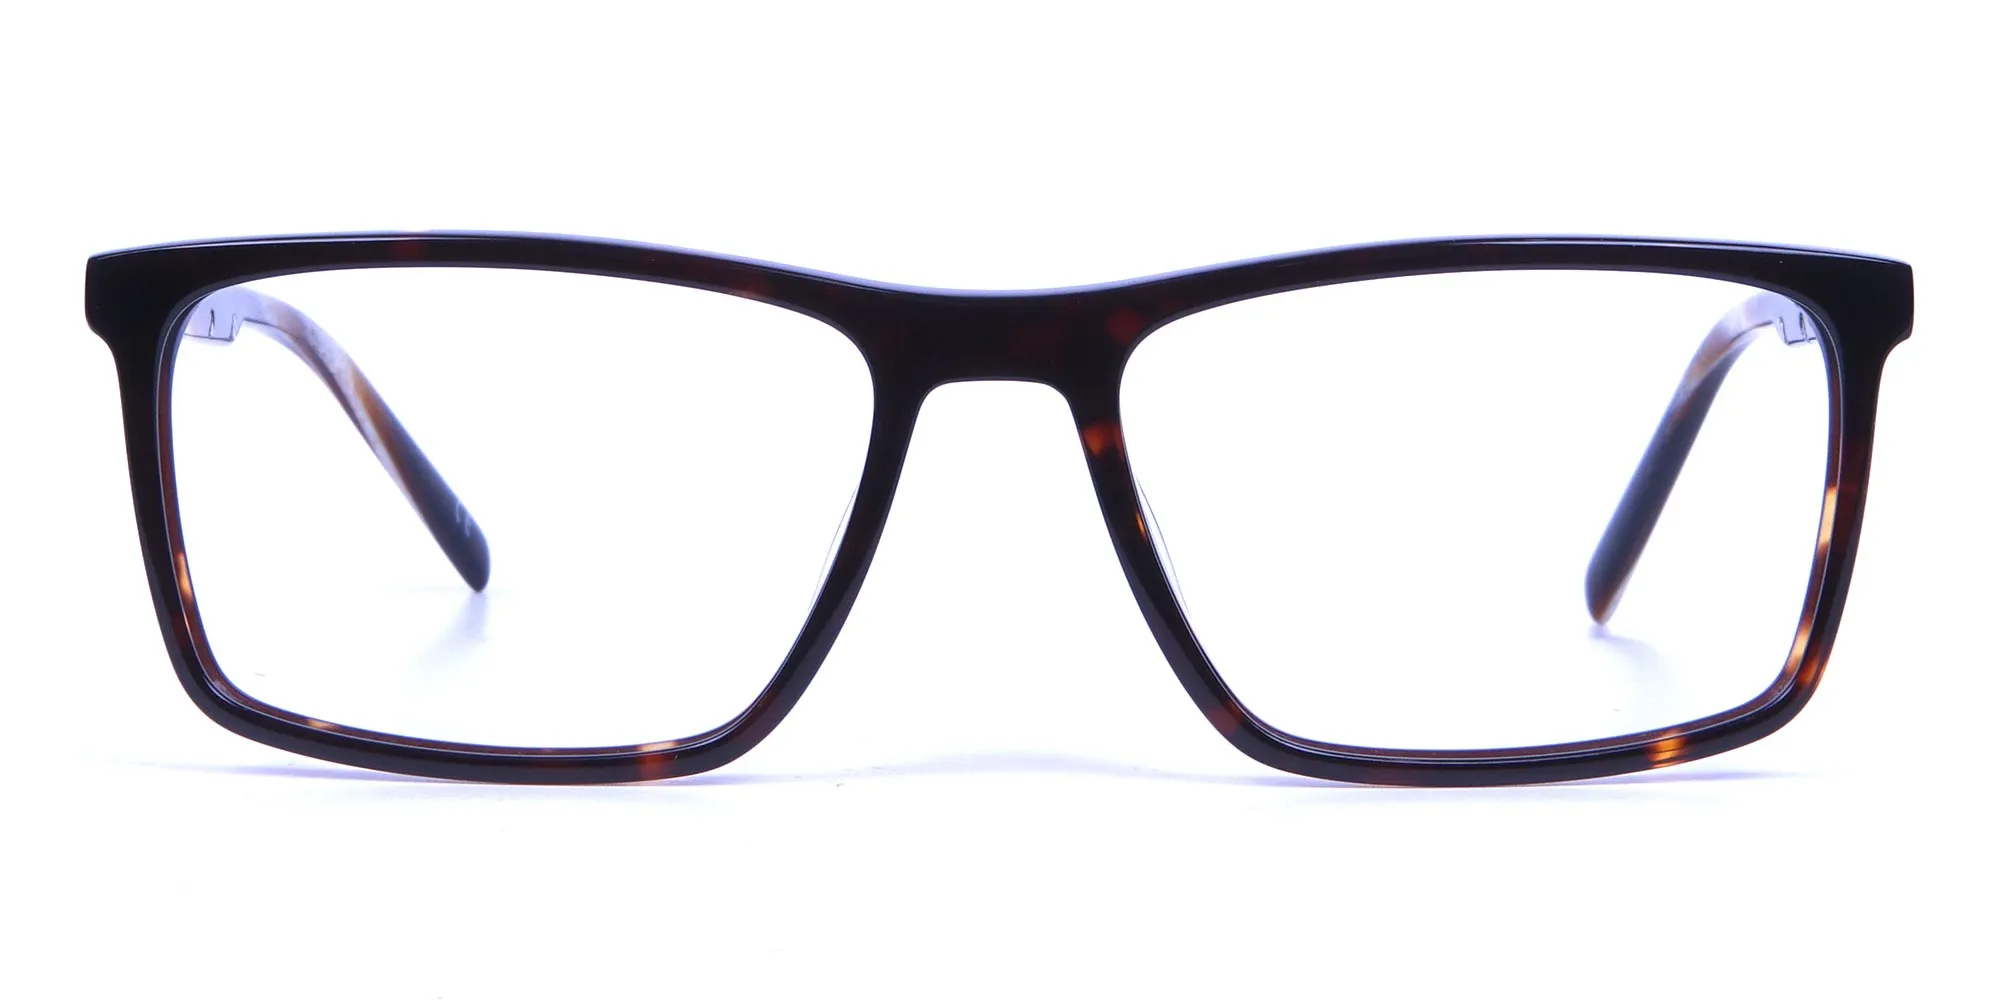 Rectangular glasses in tortoise shell for men & women - 1